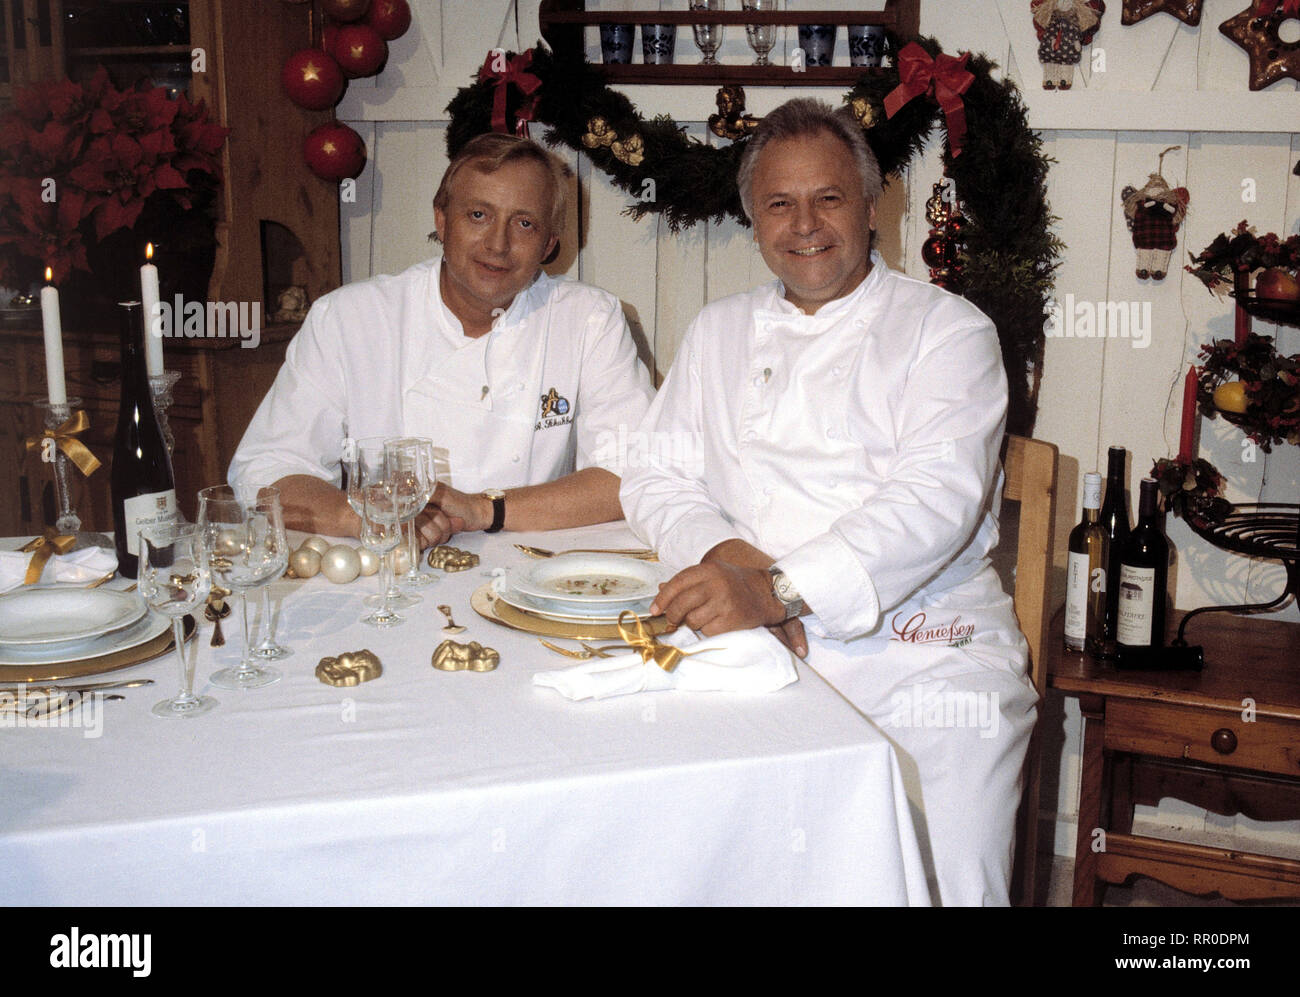 GENIESSEN ERLAUBT / Das Weihnachtsmenü / D 1996 / mit ALFONS SCHUHBECK und Eckart Witzigmann / Überschrift : GENIESSEN ERLAUBT / D 1996 Banque D'Images